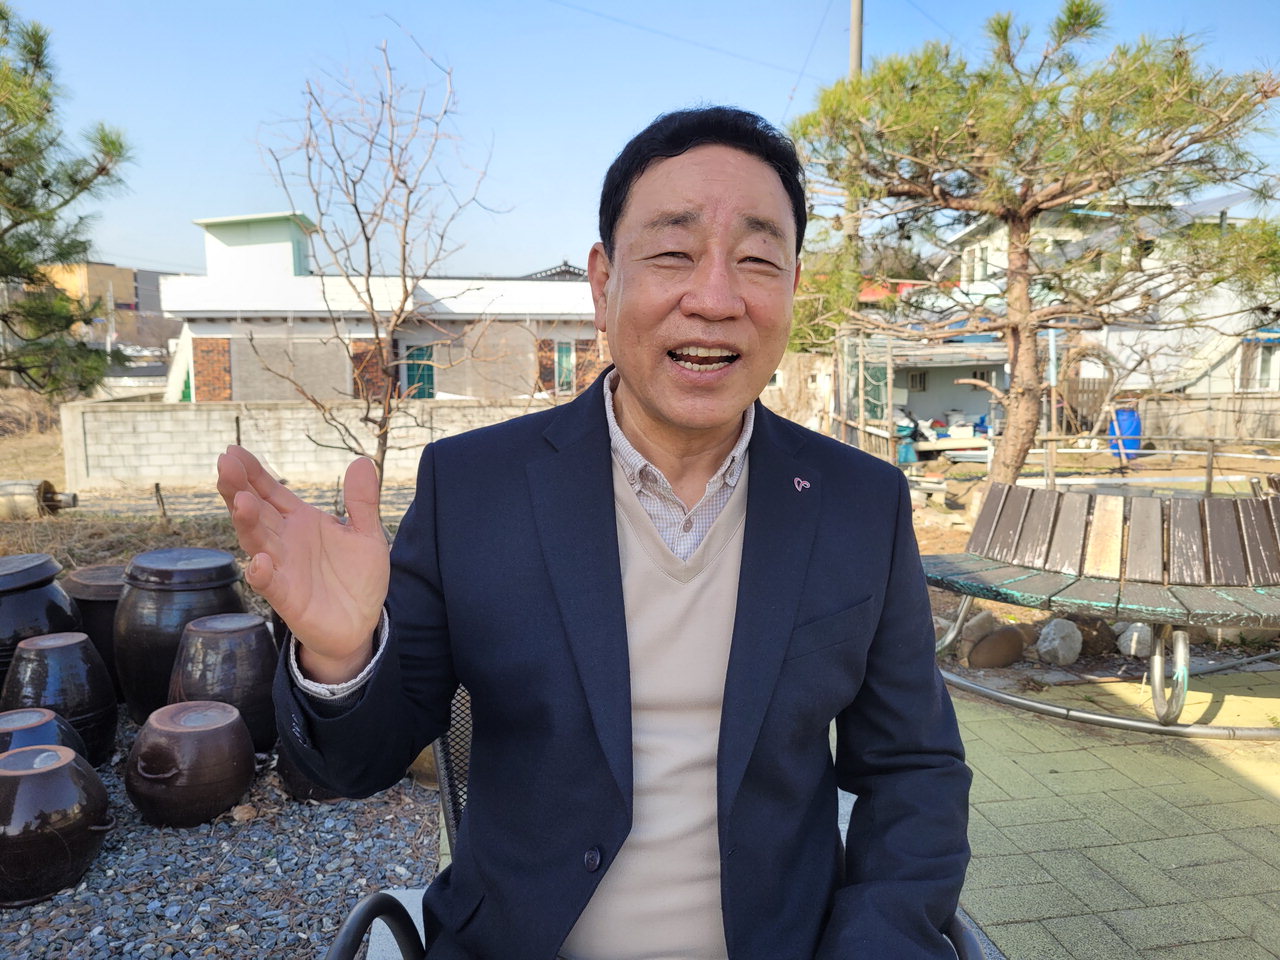 진기용 용두동 주민자치위원회 부위원장이 지난 20일 신백동 한 카페에서 본보와 인터뷰하고 있는 모습.